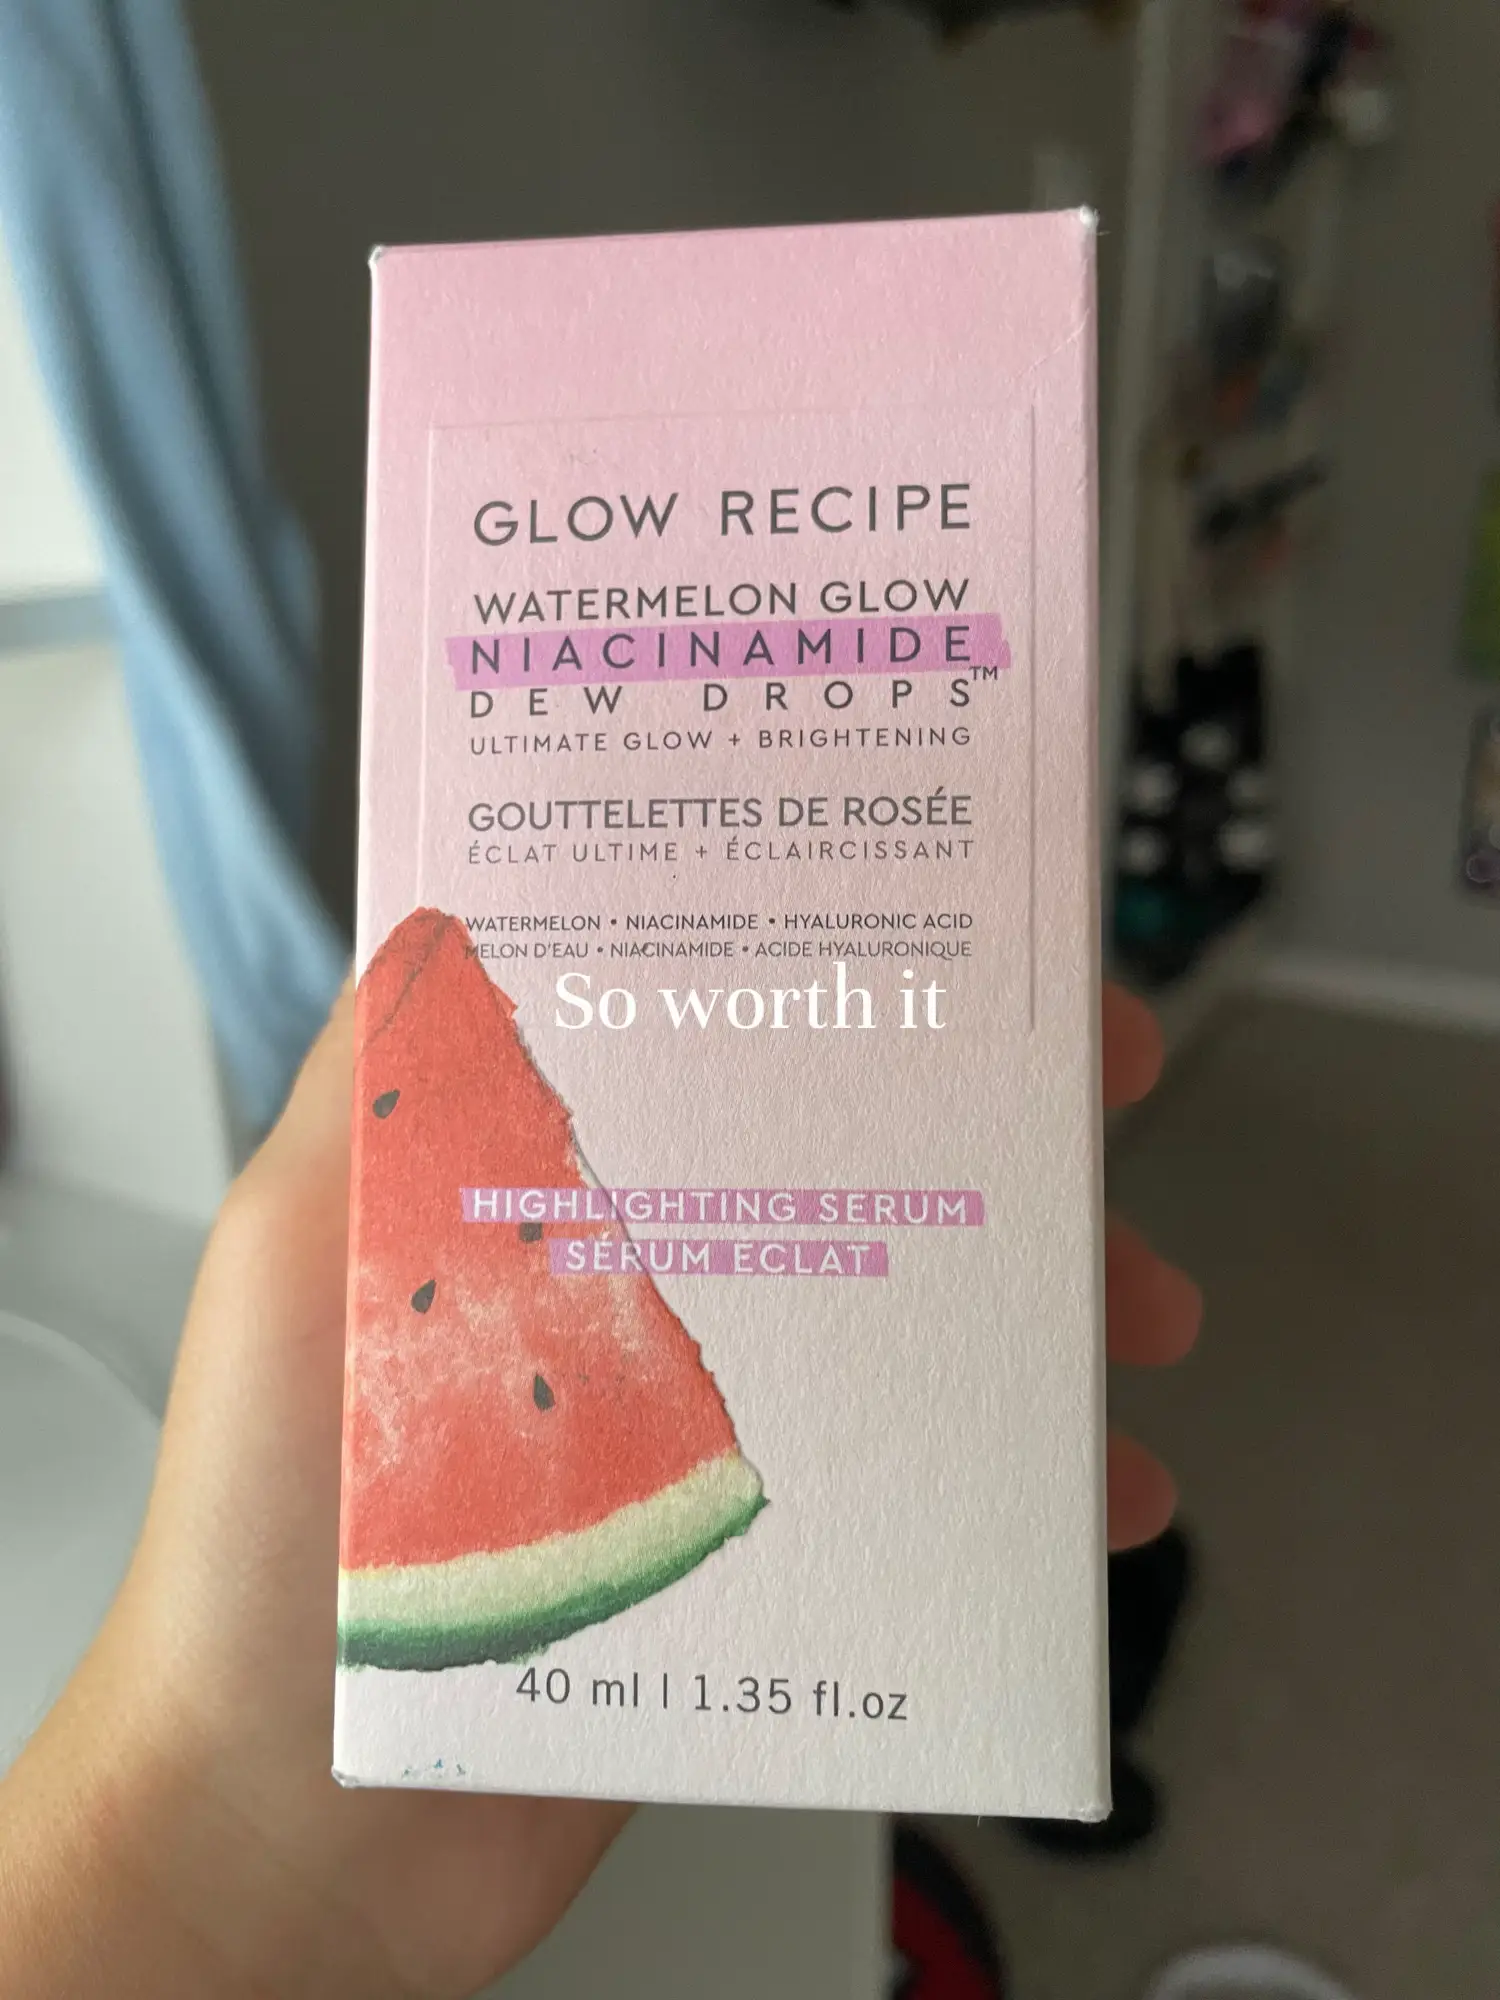 Watermelon Glow Niacinamide Dew Drops Serum - Glow Recipe